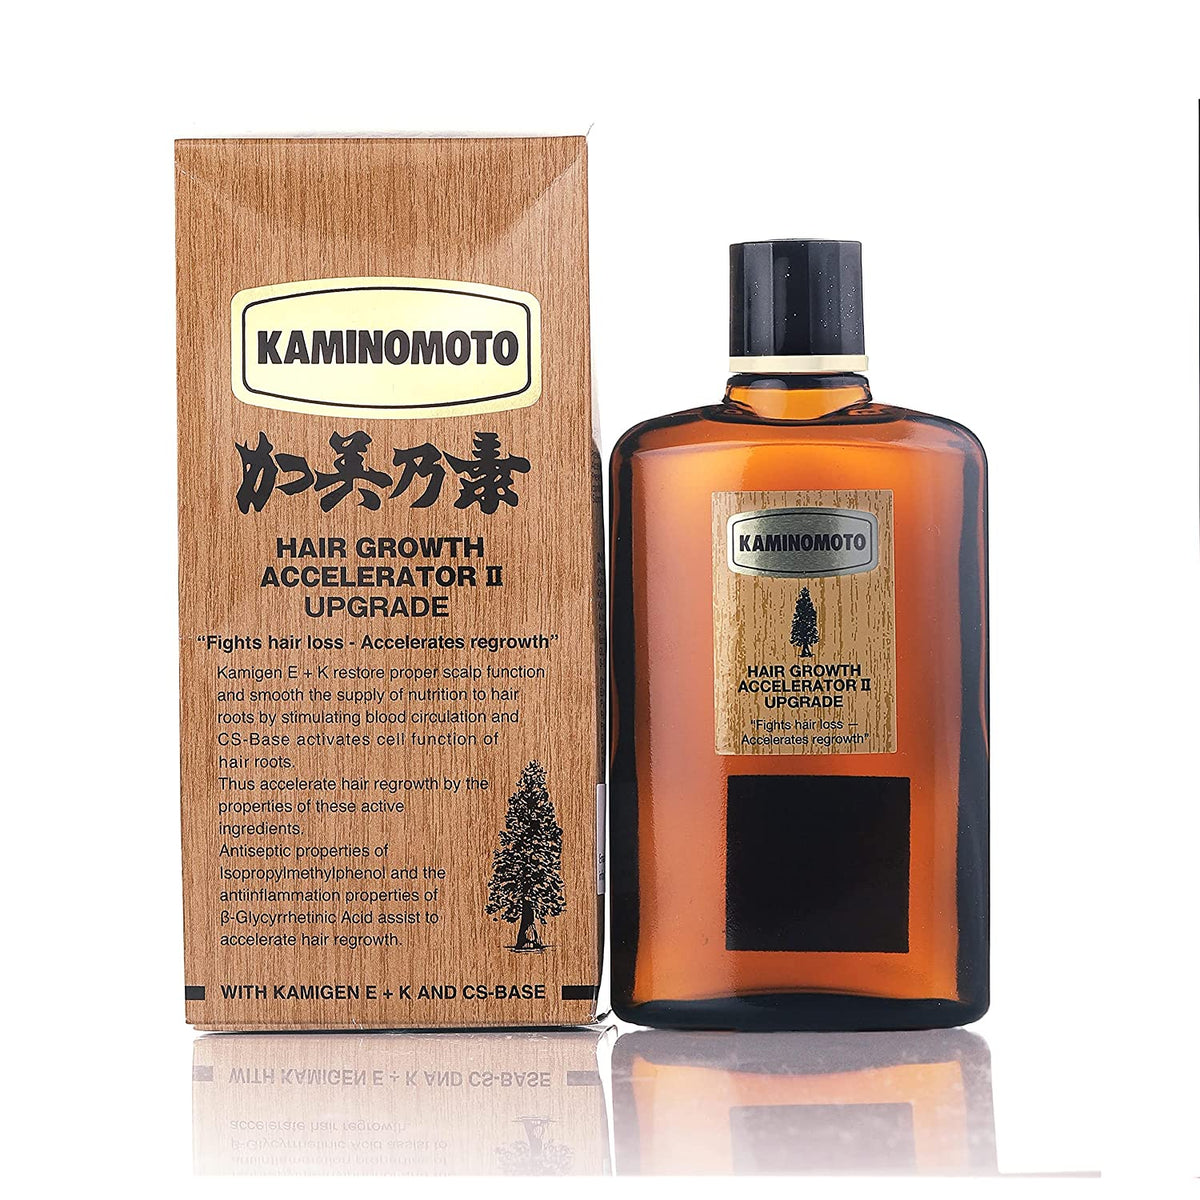 Kaminomoto Hair Growth Accelerator 2 Upgrade (150 ml) Kaminomoto